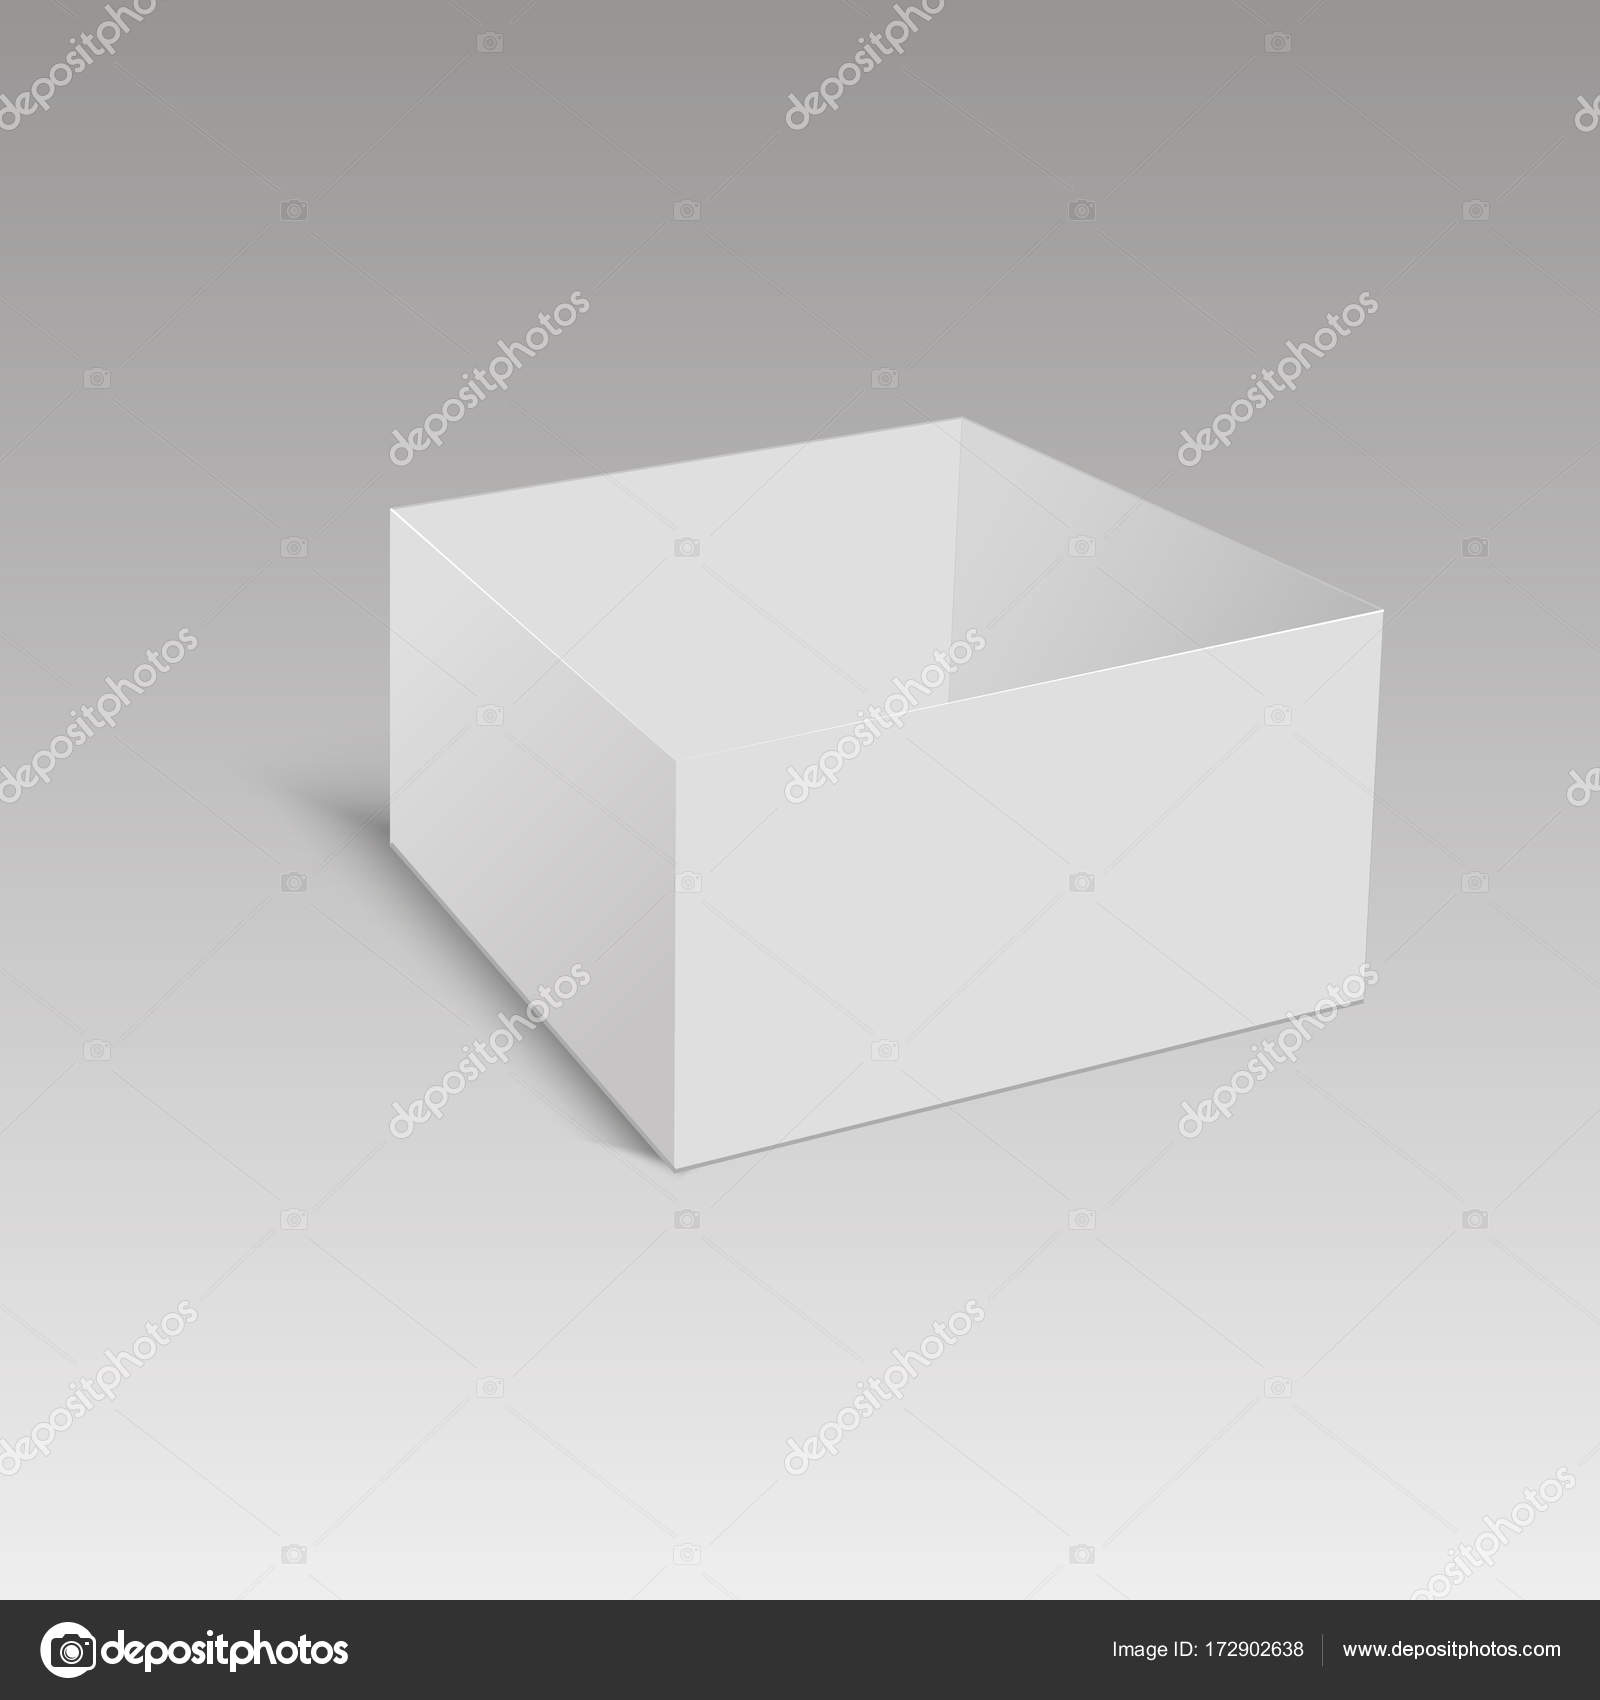 Download Branco quadrado papelão ou pacote de papel caixa mockup ...